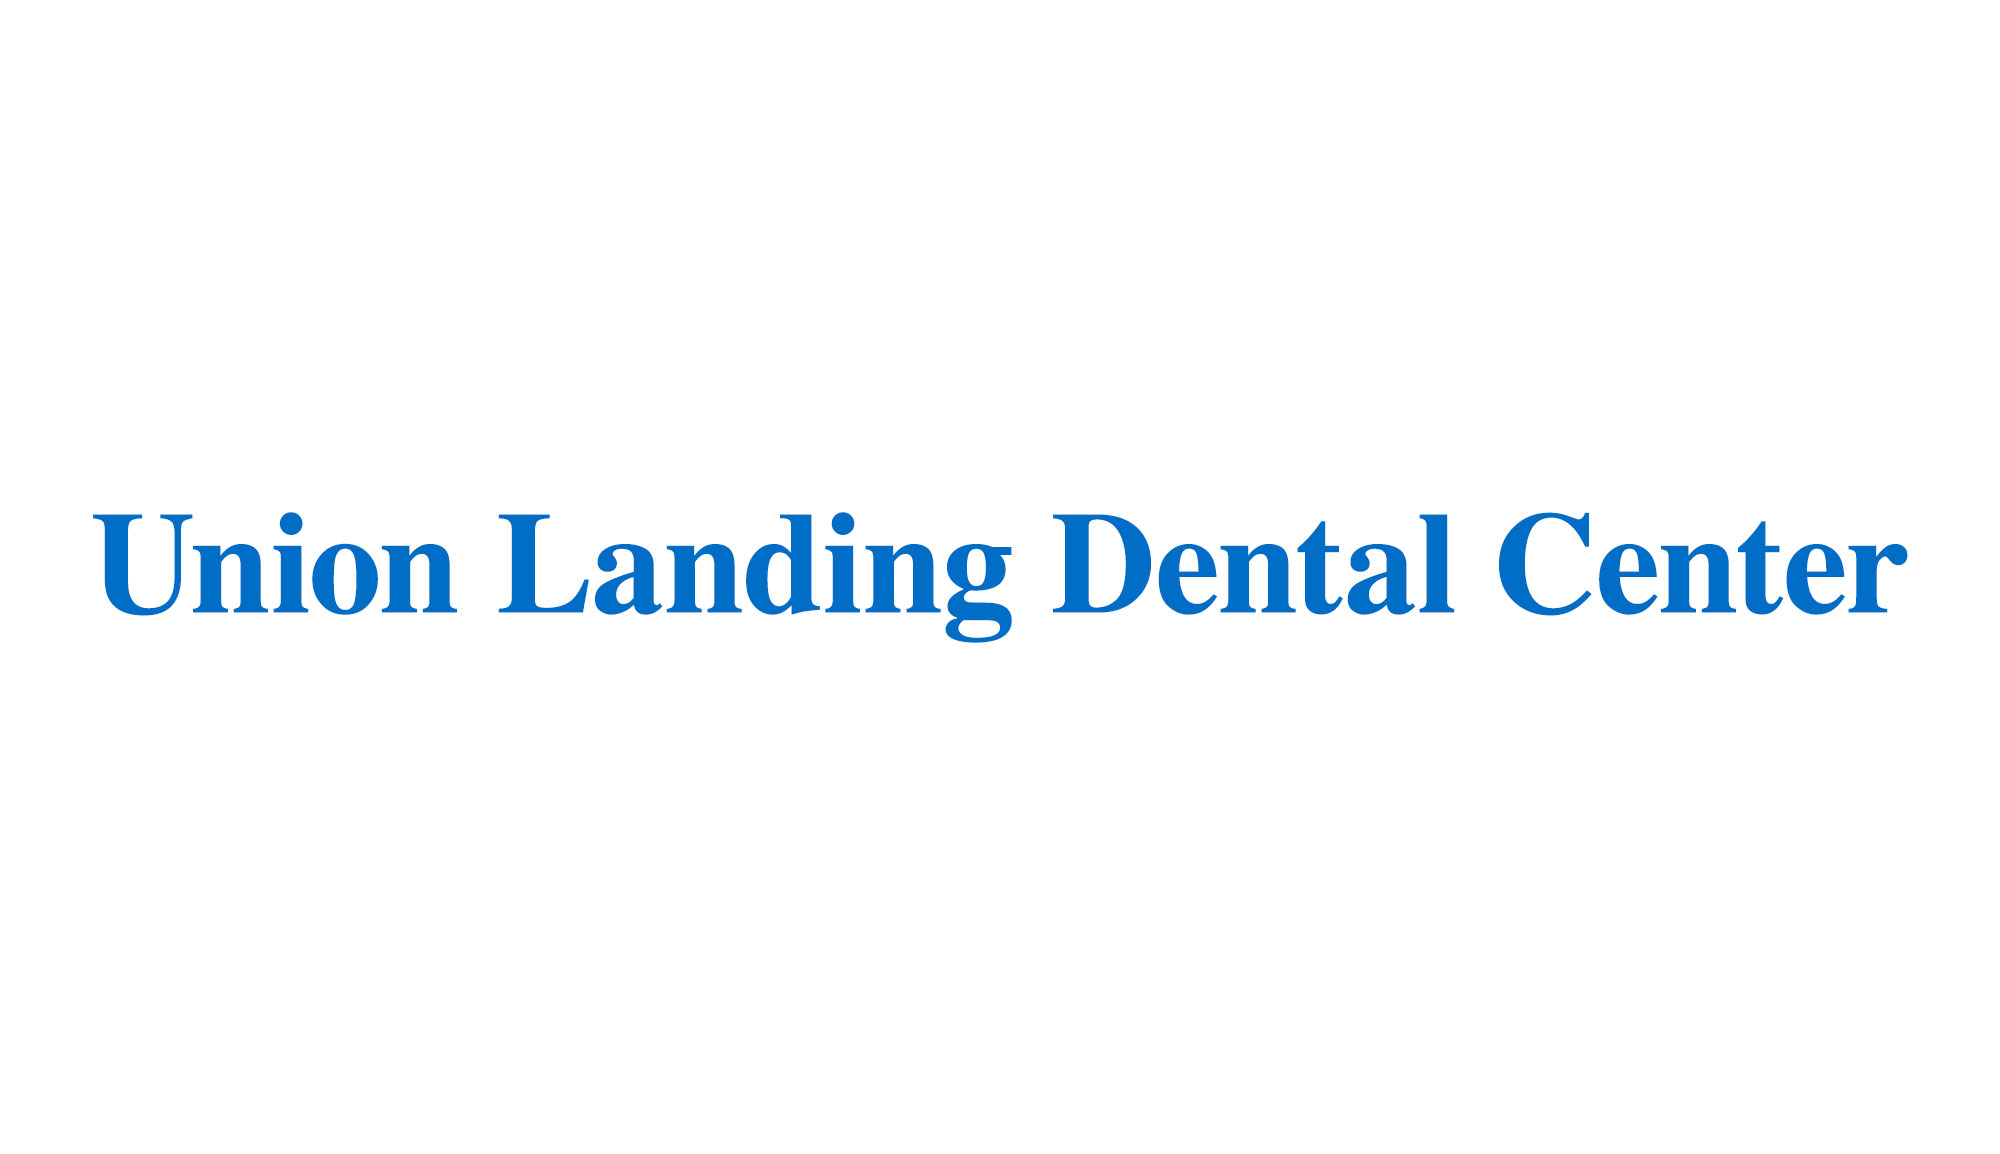 Union Landing Dental Center logo